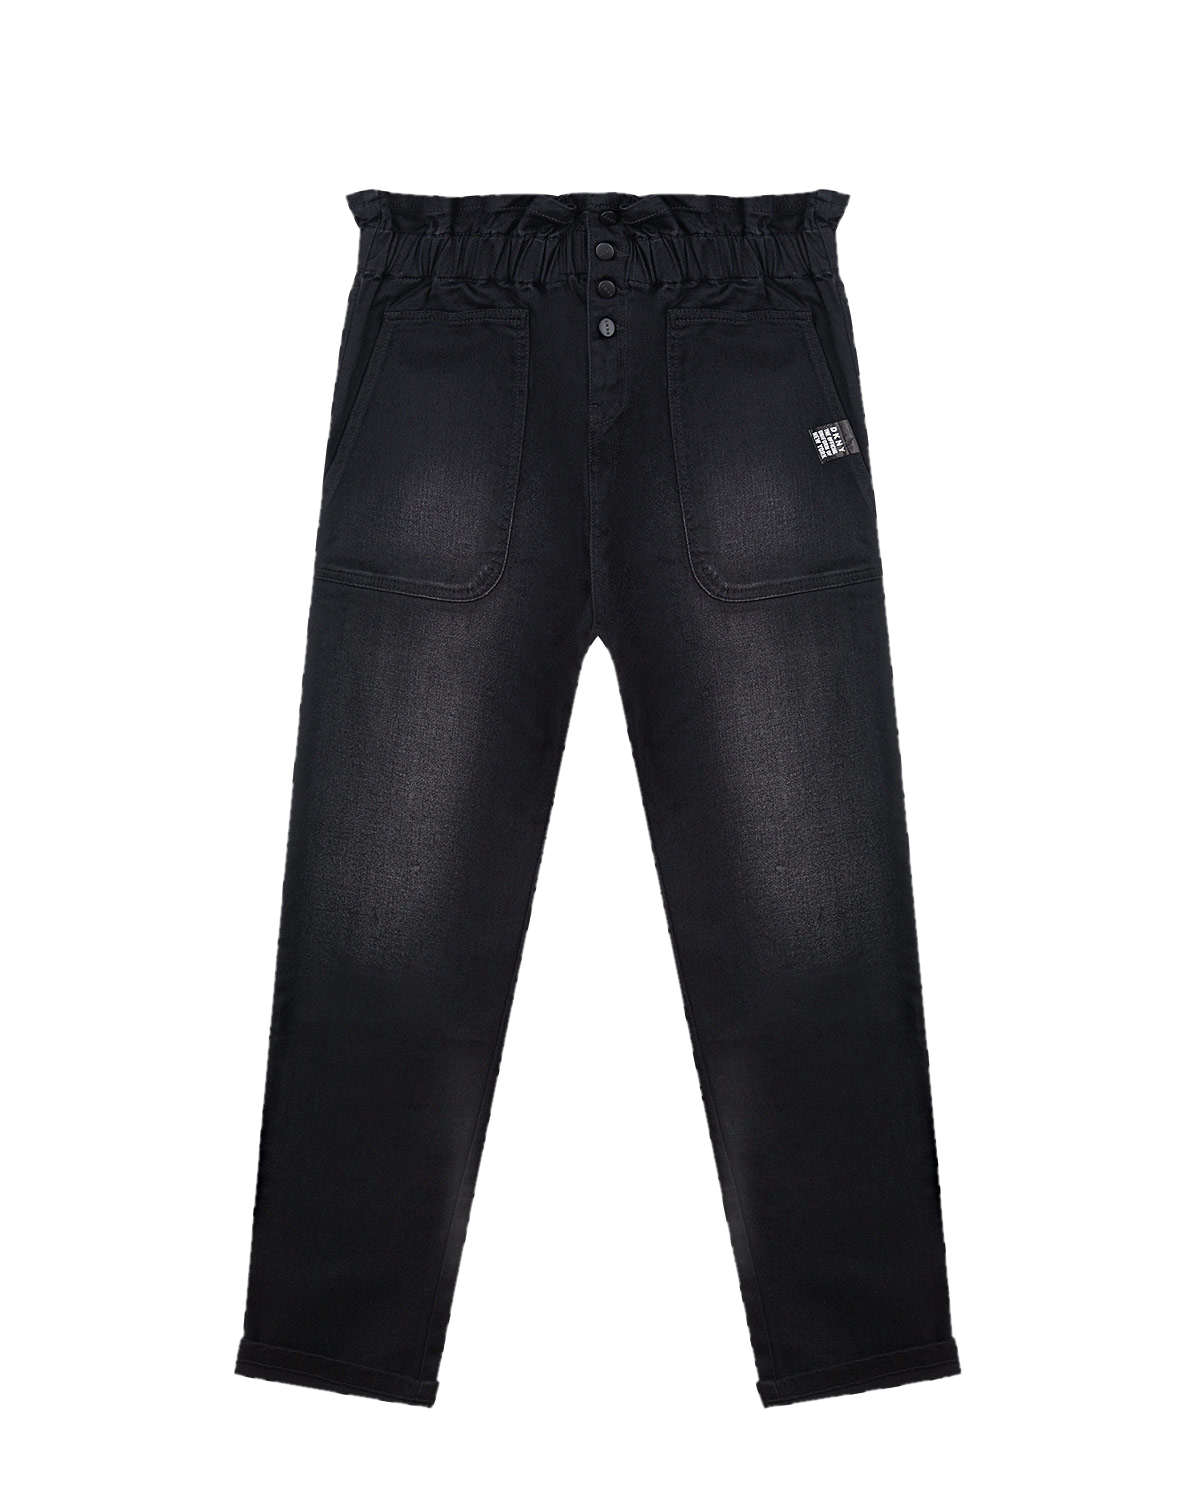 Черные джинсы с высокой посадкой на талии DKNY детские